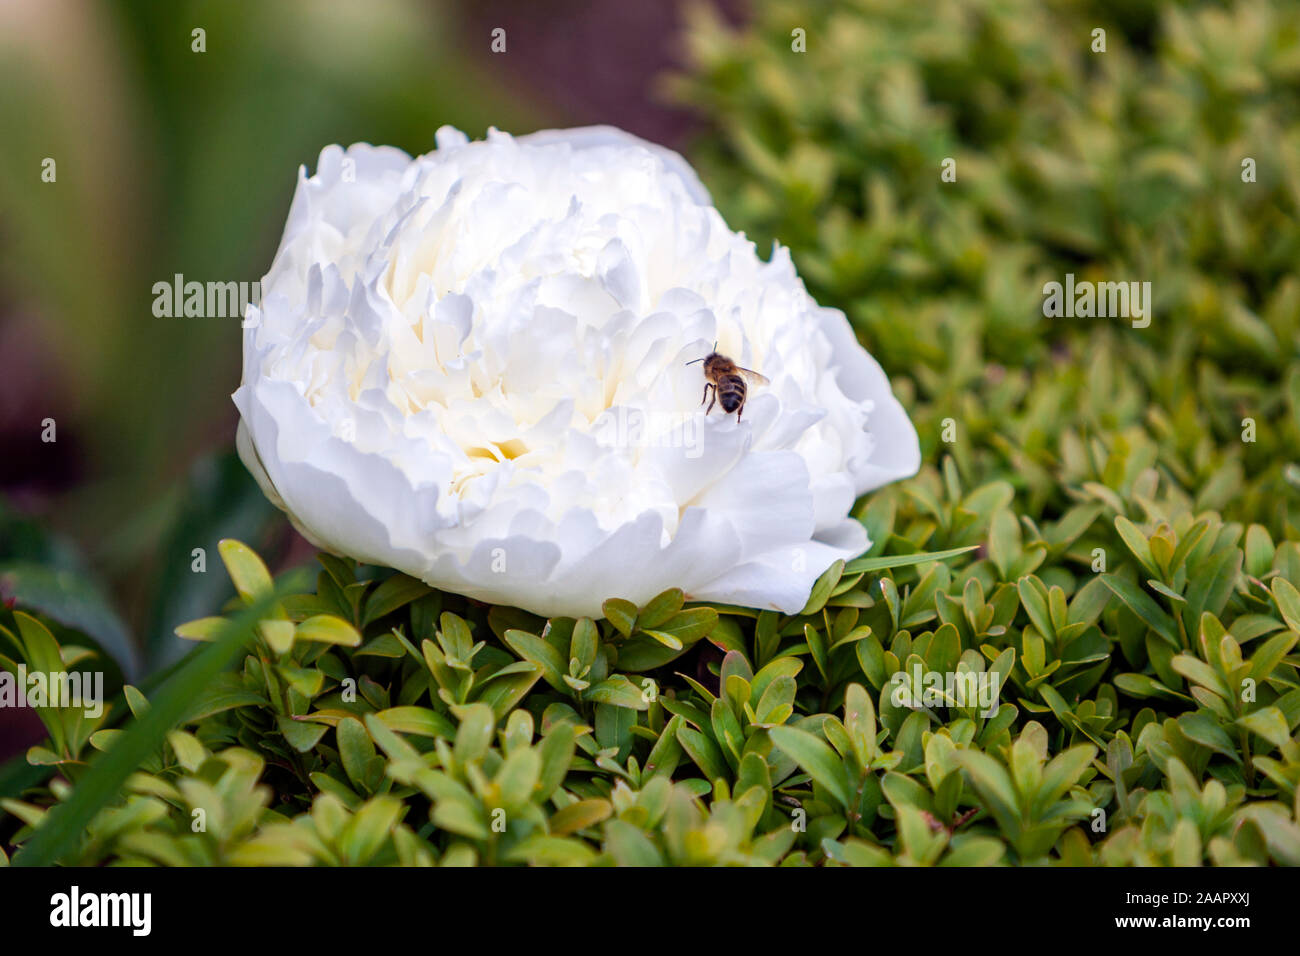 Abeja en una flor blanca, la peonía o paeony, género Paeonia, familia Paeoniaceae, en un jardín. Foto de stock